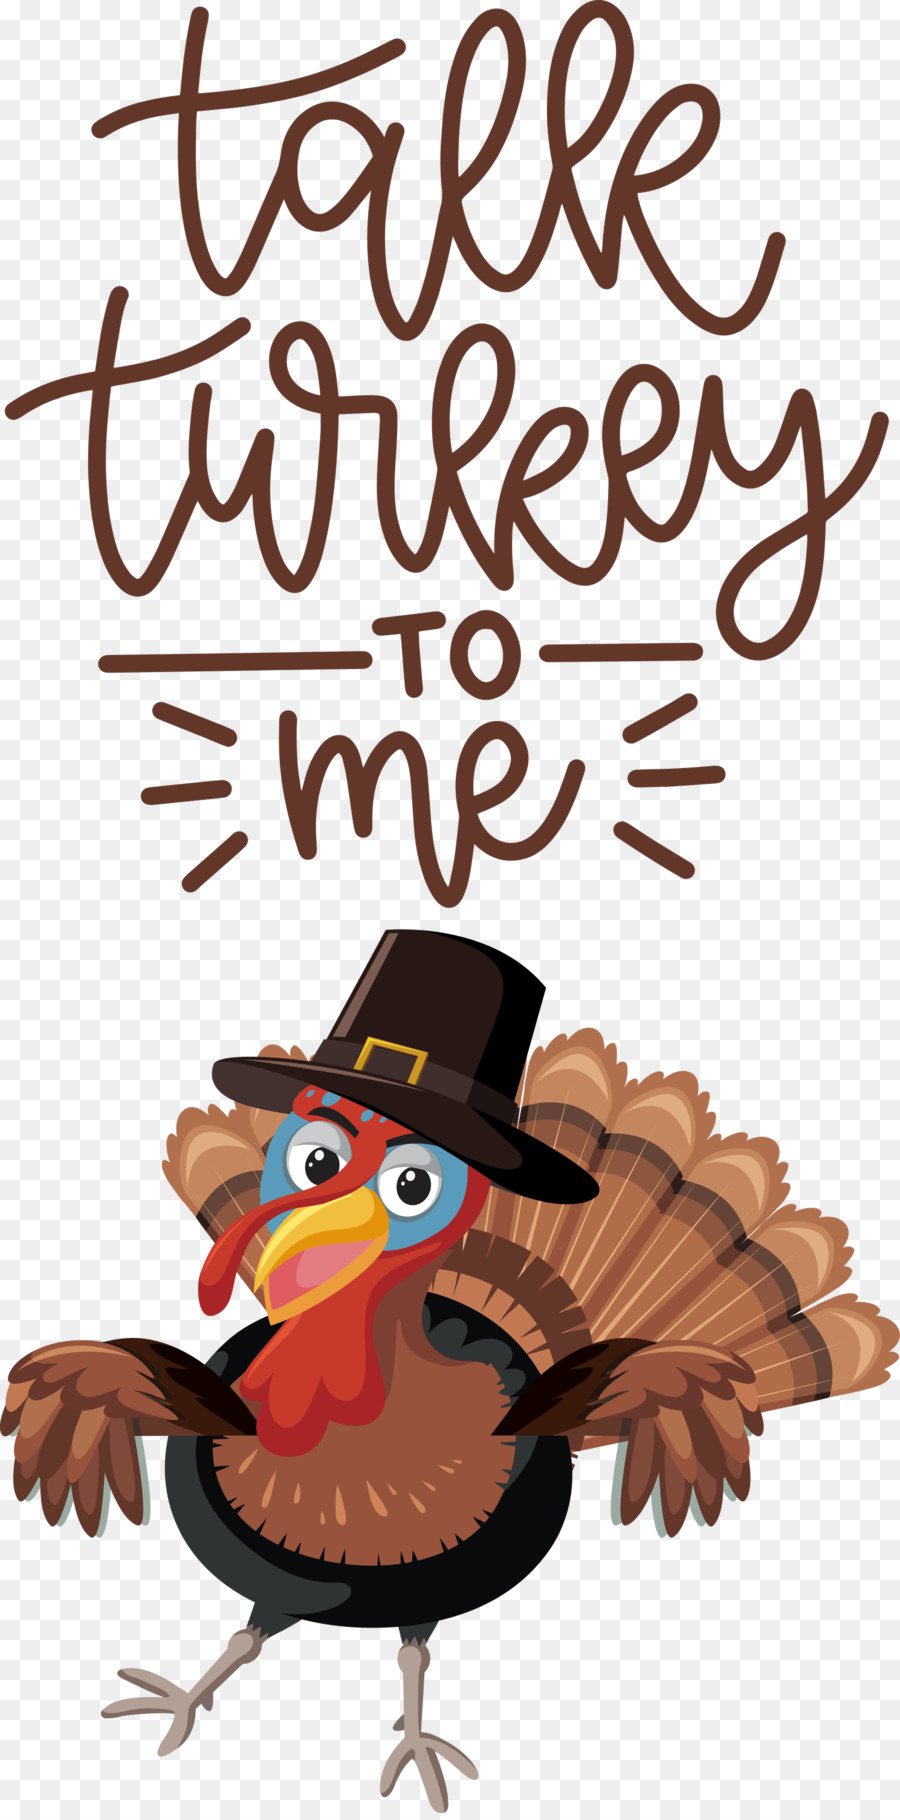 die Türkei thanksgiving - 